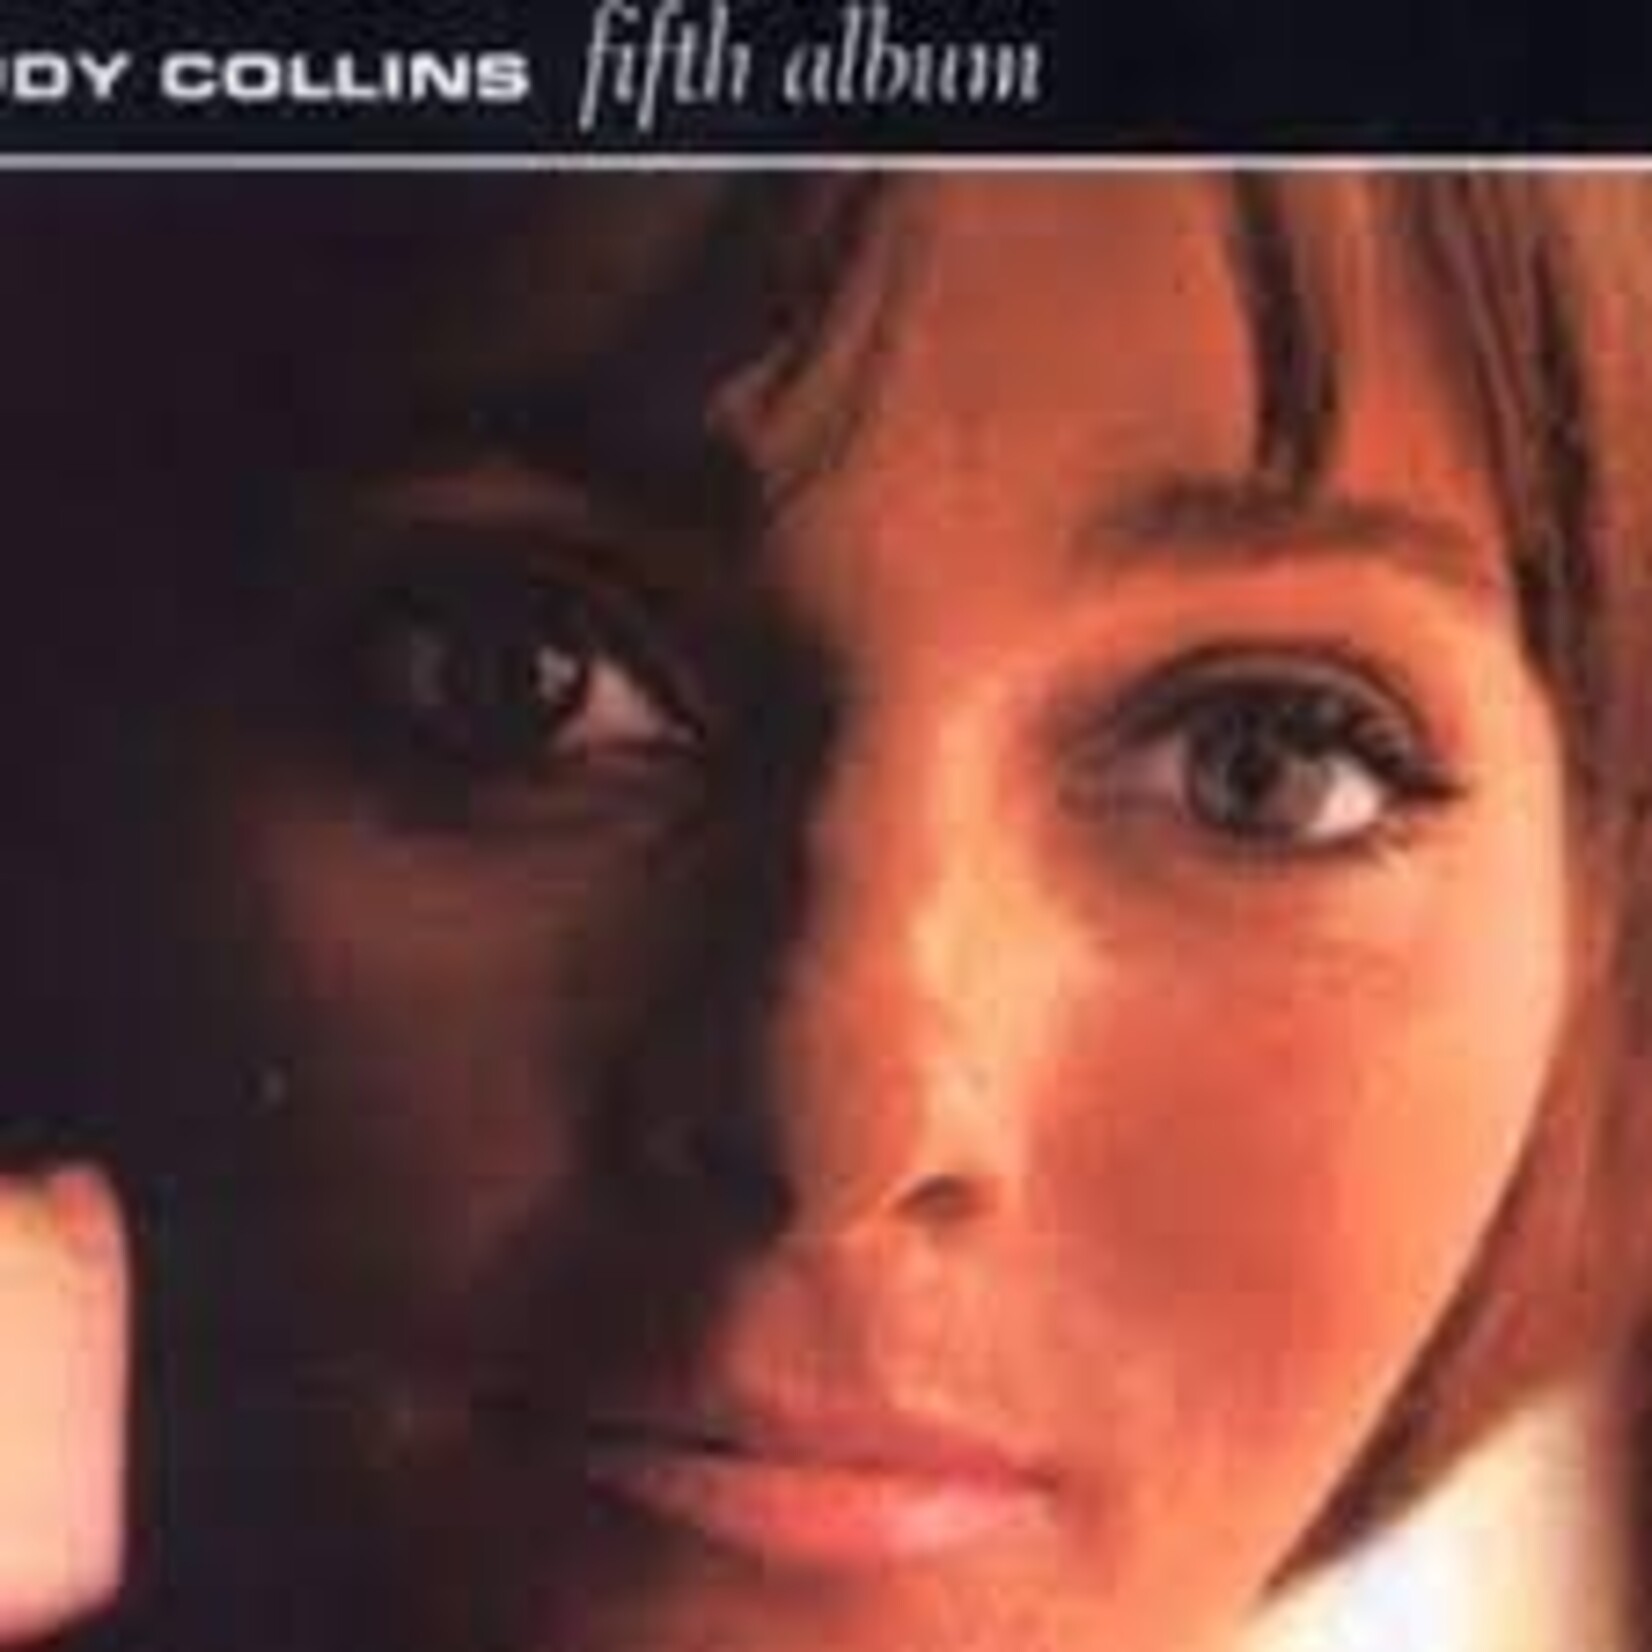 [Vintage] Judy Collins - Fifth Album